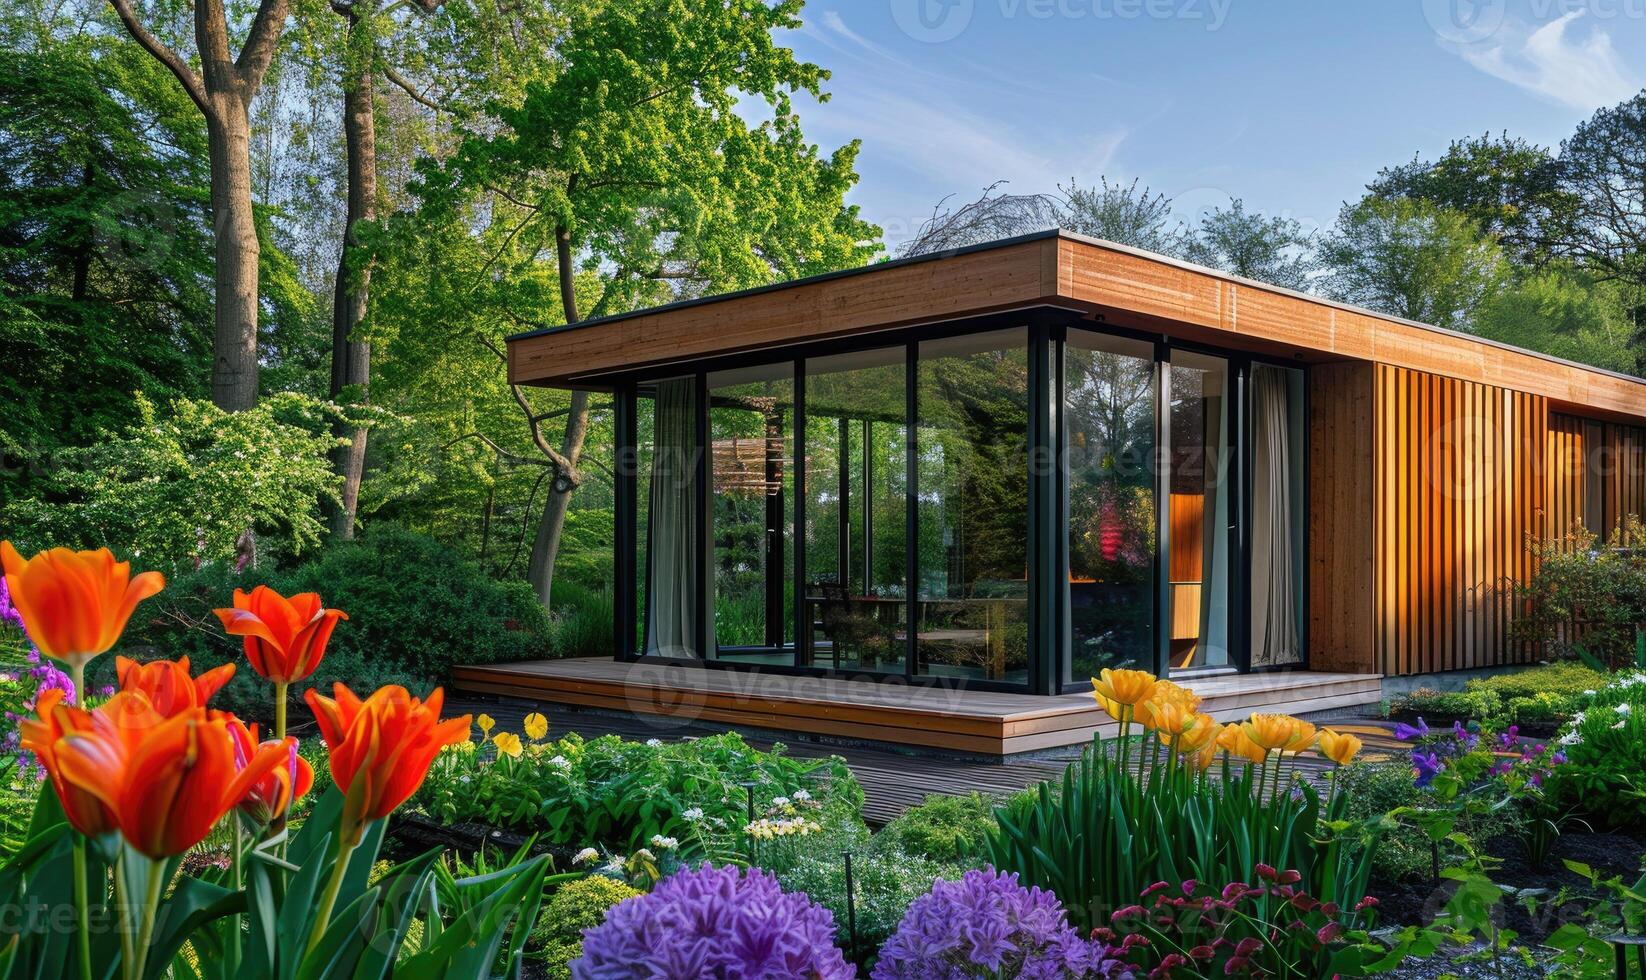 une contemporain en bois cabine avec grand les fenêtres surplombant une serein printemps jardin rempli avec vibrant fleurs et luxuriant végétation photo